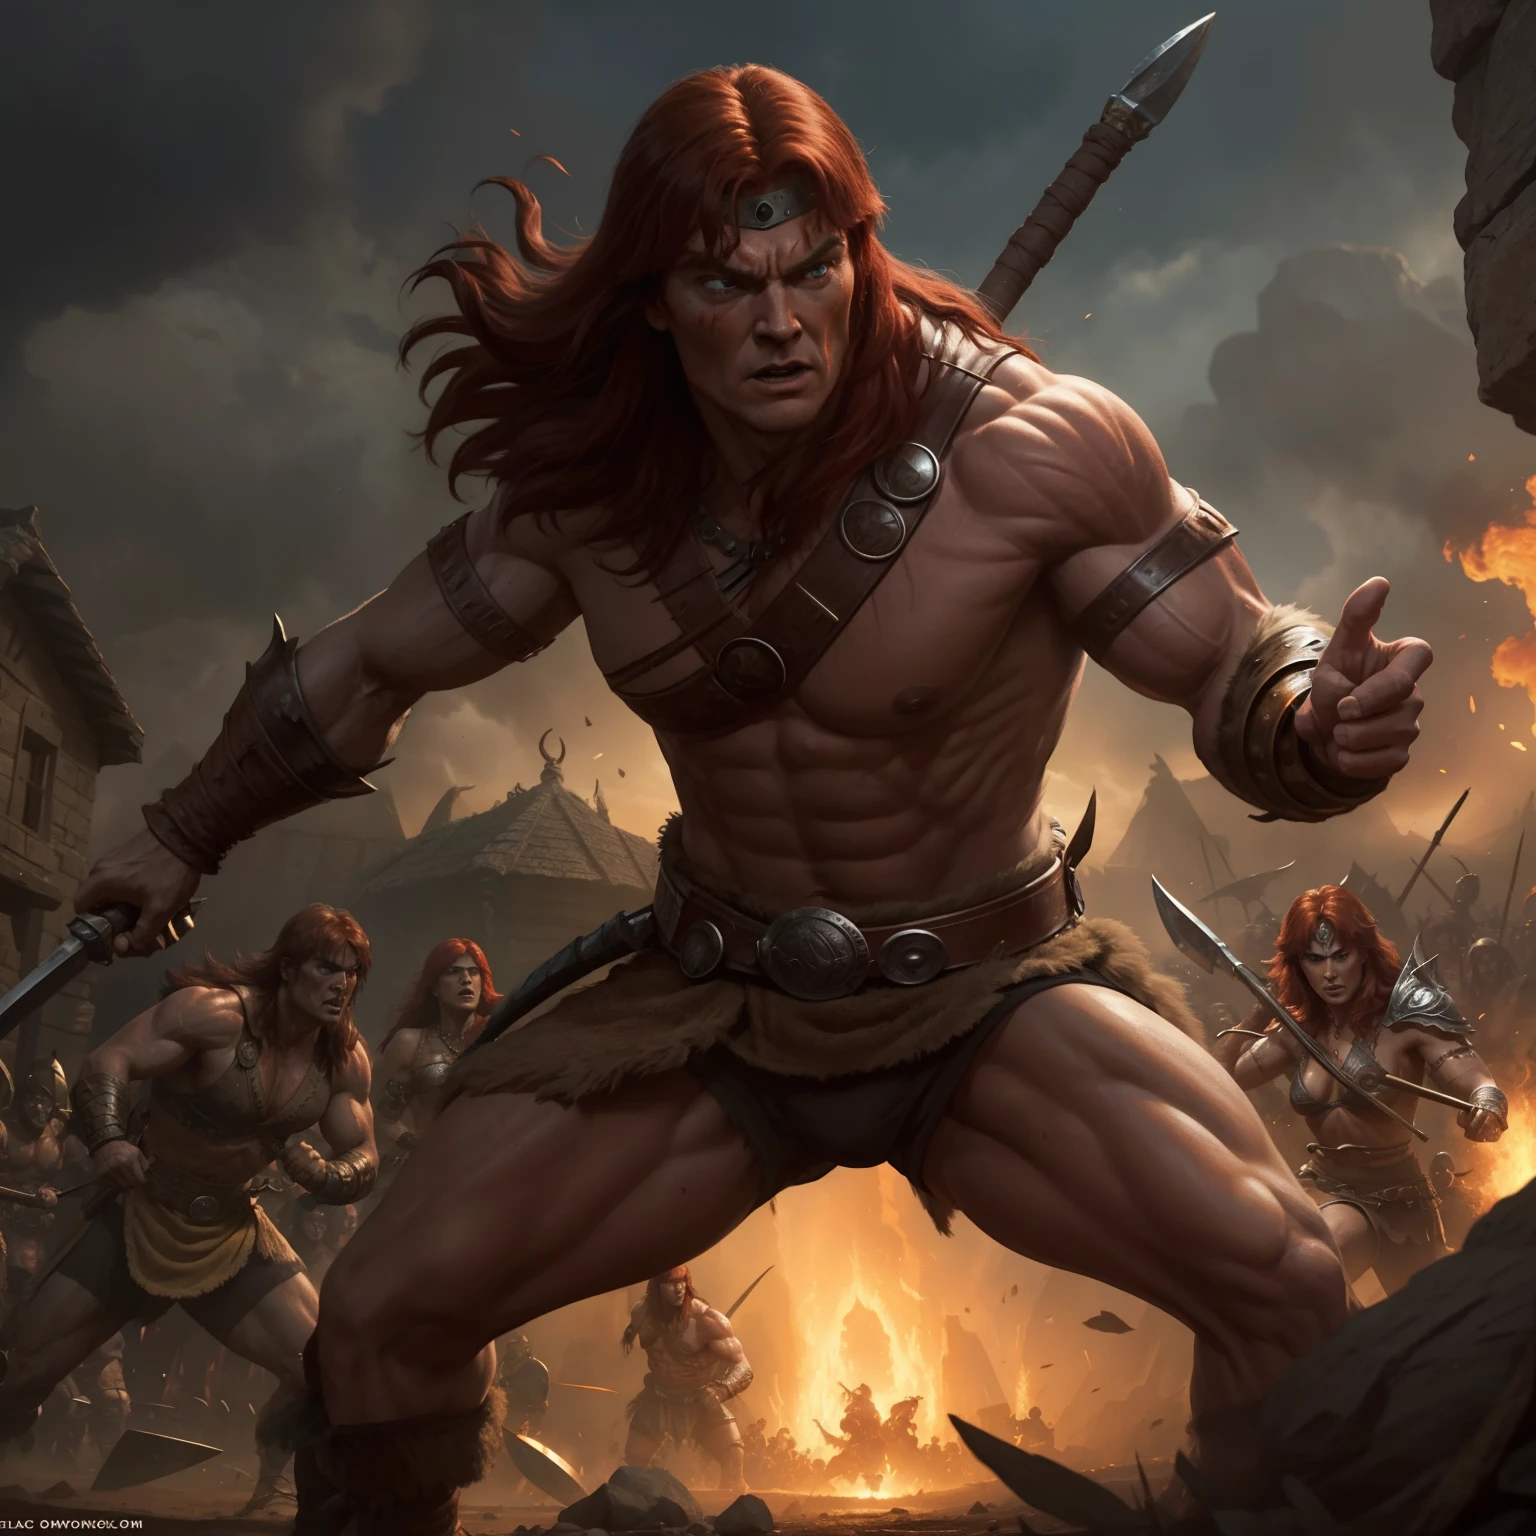 Conan und Red Sonja in einem kimmerischen Dorf in einer epischen Schlachtszene, mit dem Erscheinen von Comic-inspirierten Charakteren.